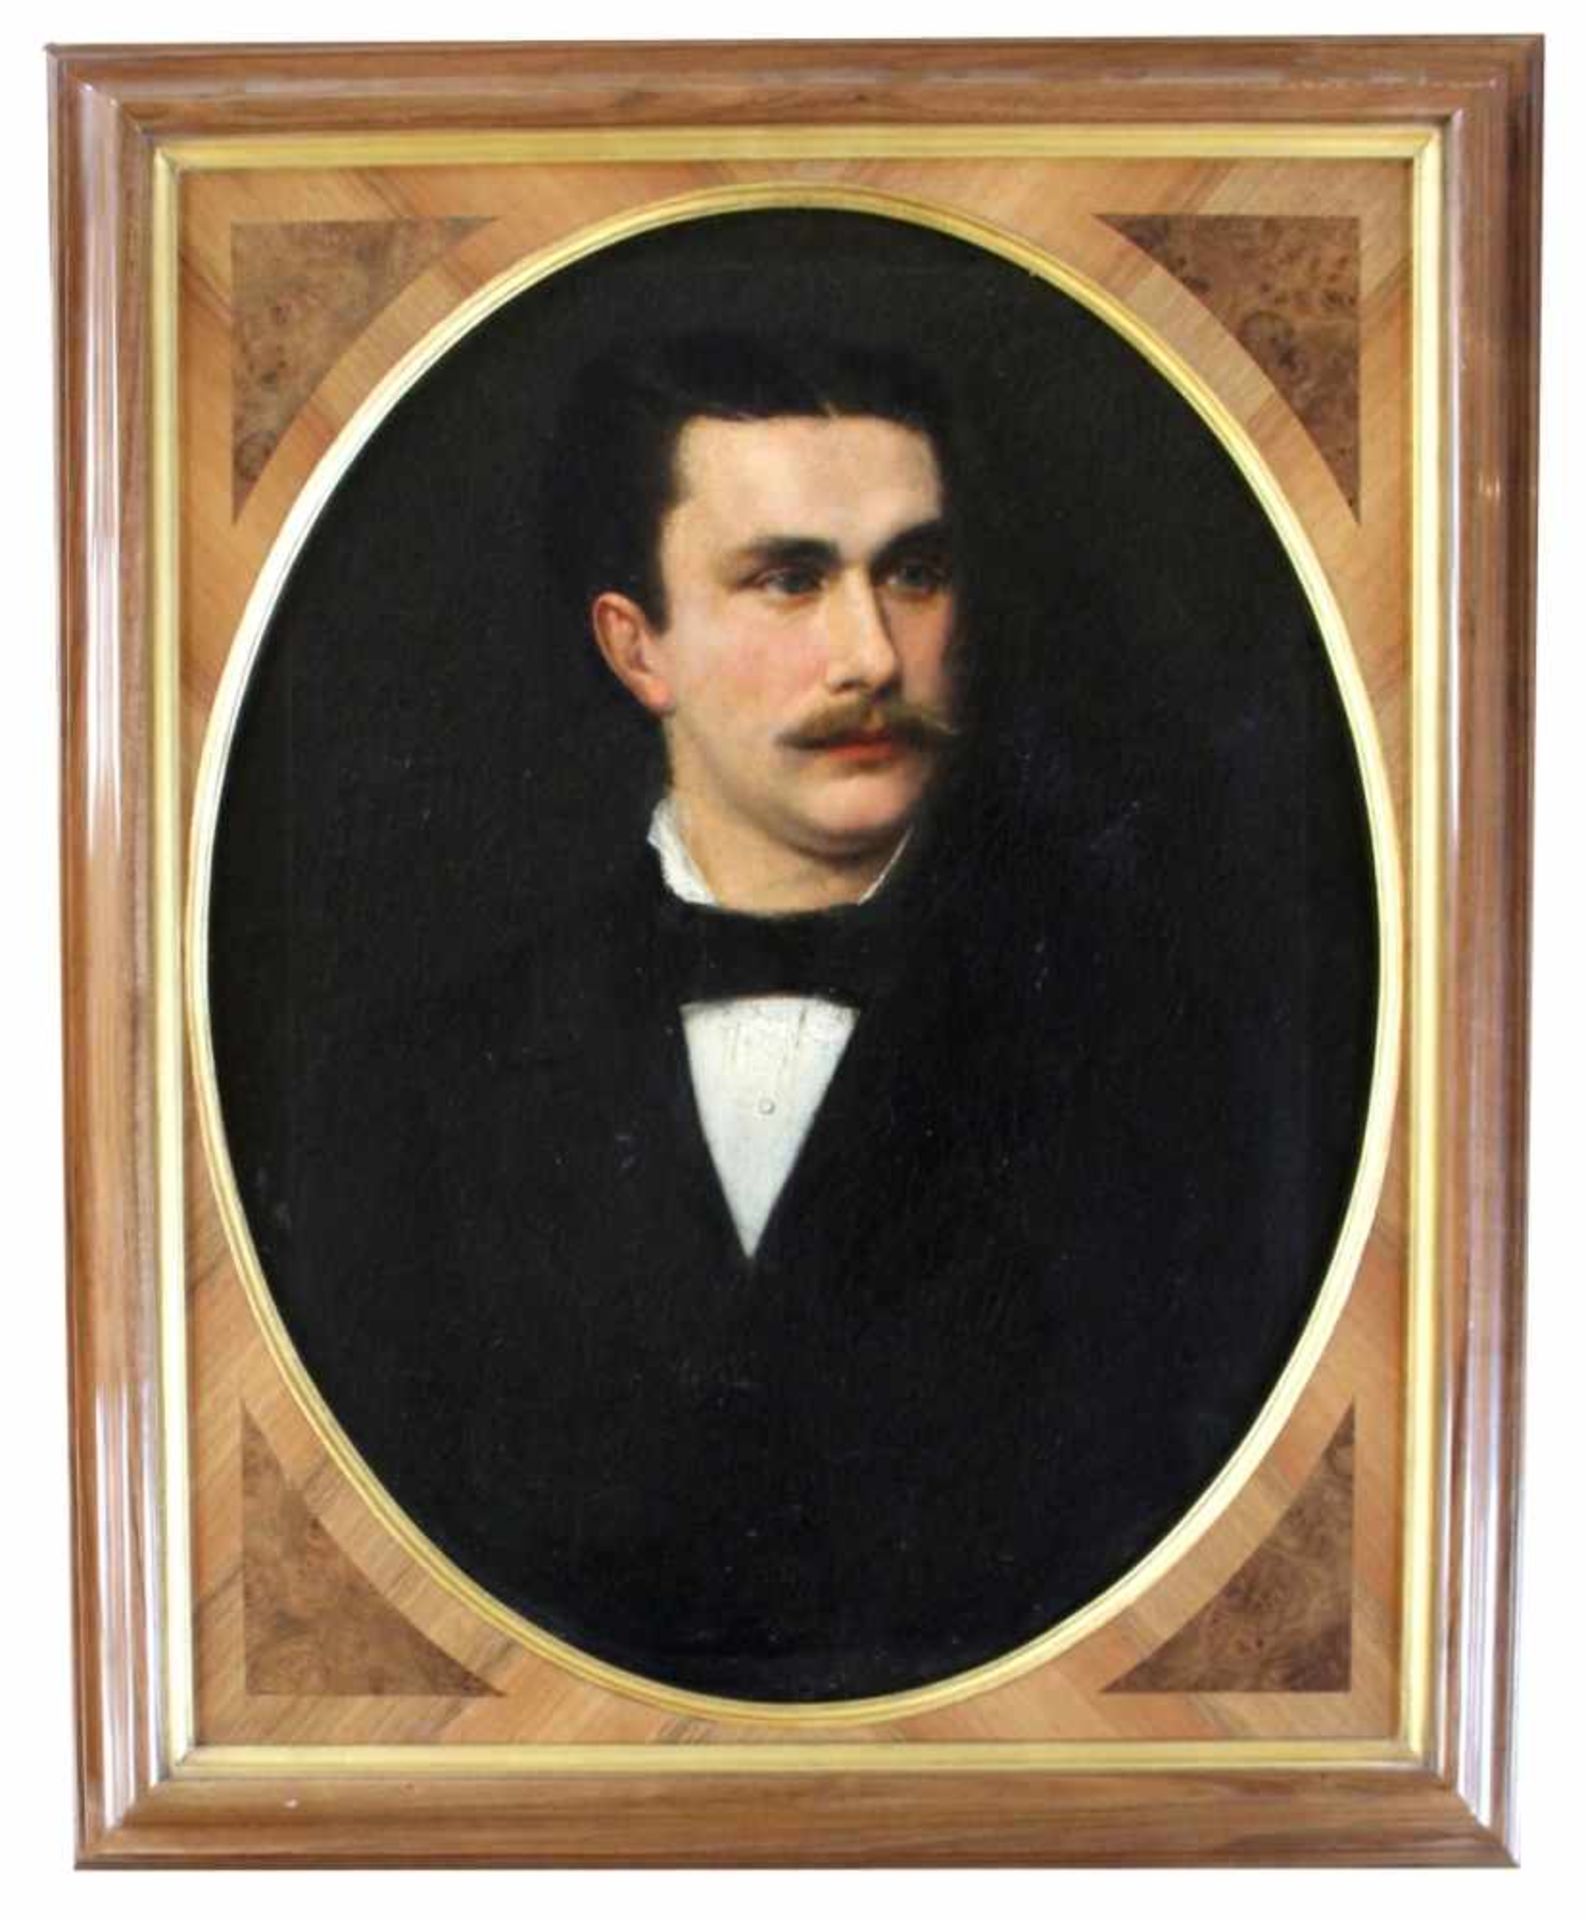 Gemälde - 19.Jahrhundert "Herrenbildnis - Ähnlichkeit mit König Ludwig II", anonymer Künstler, Öl